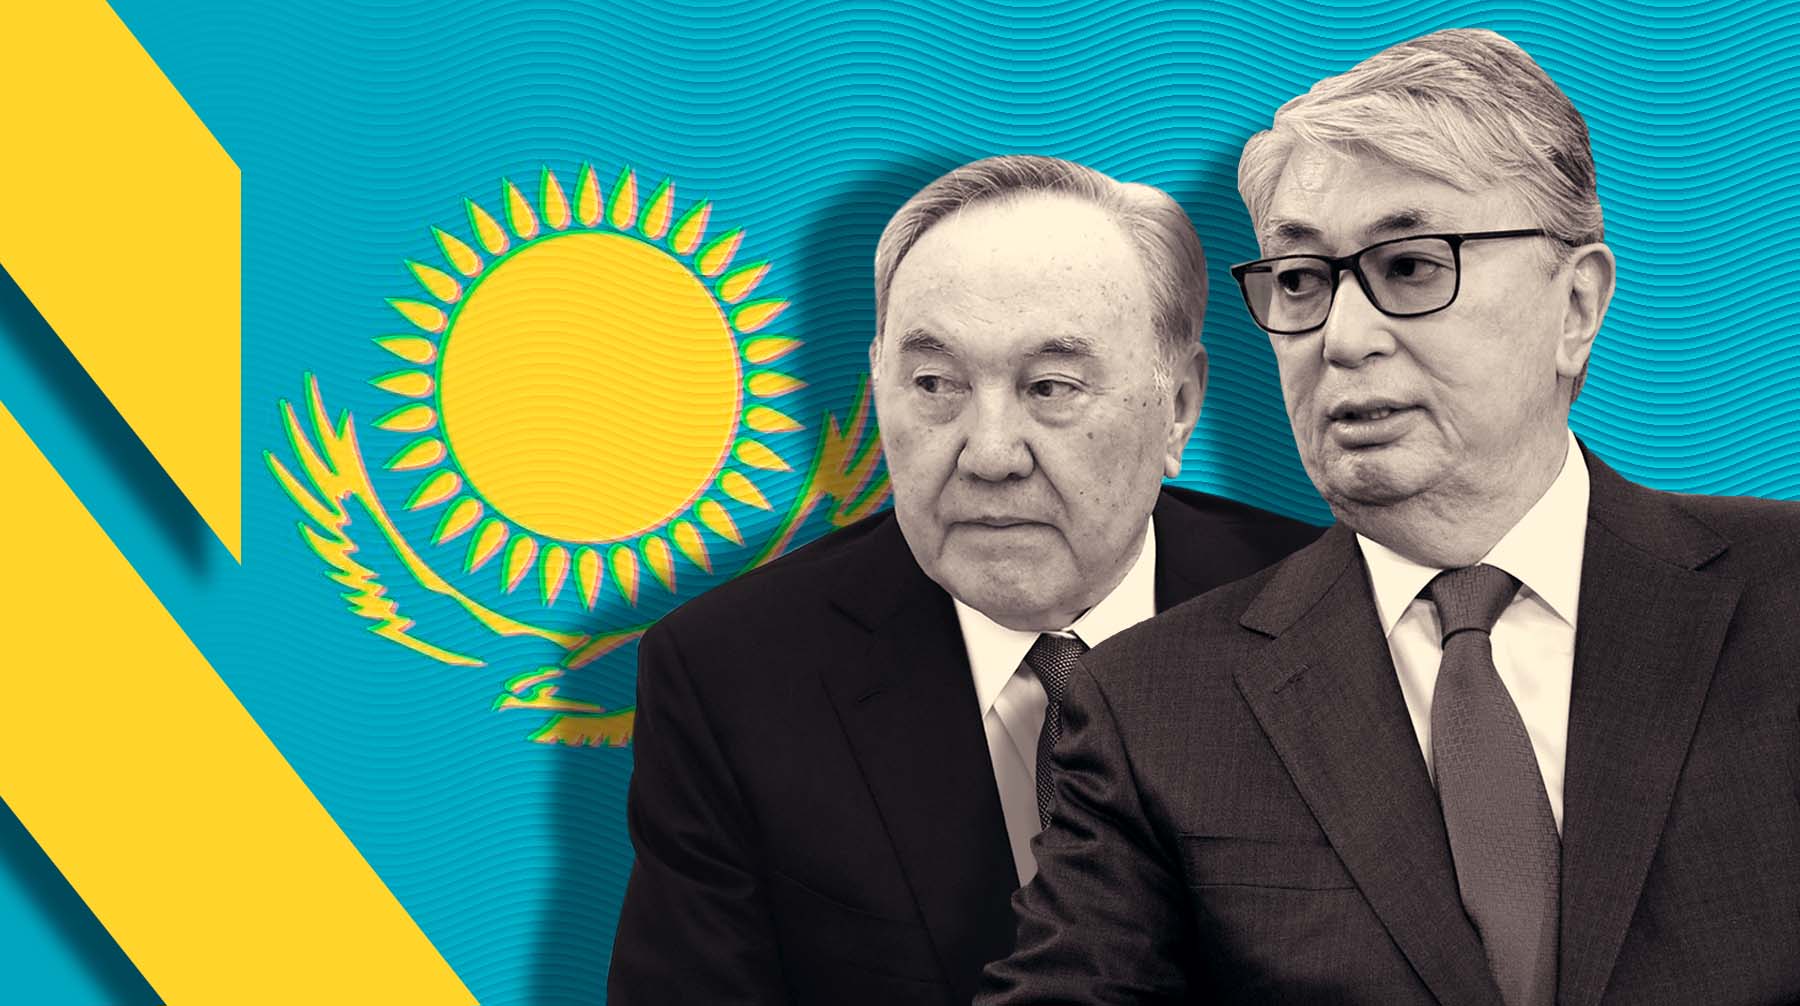 Что изменится в Казахстане? Токаев объявил реформы и покритиковал Назарбаева